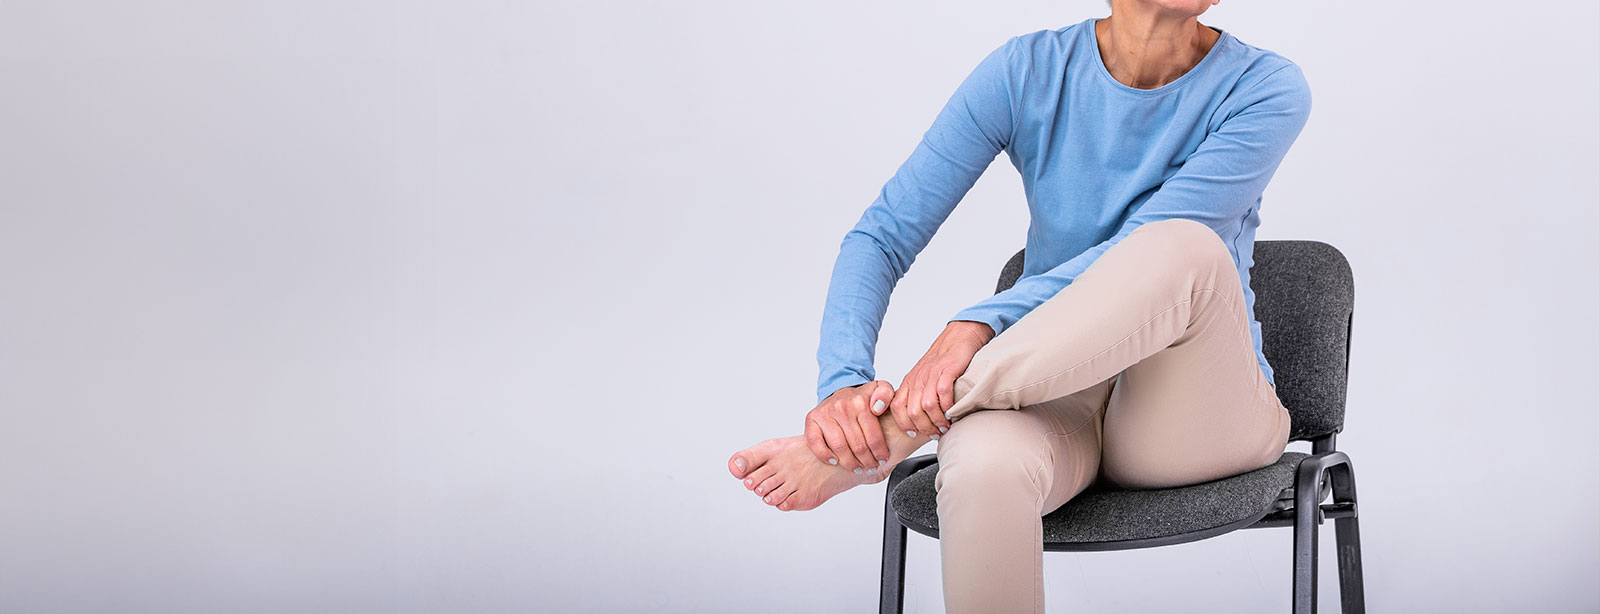 Pourquoi vos jambes vous font-elles mal lorsque vous vous levez après avoir été assis ?